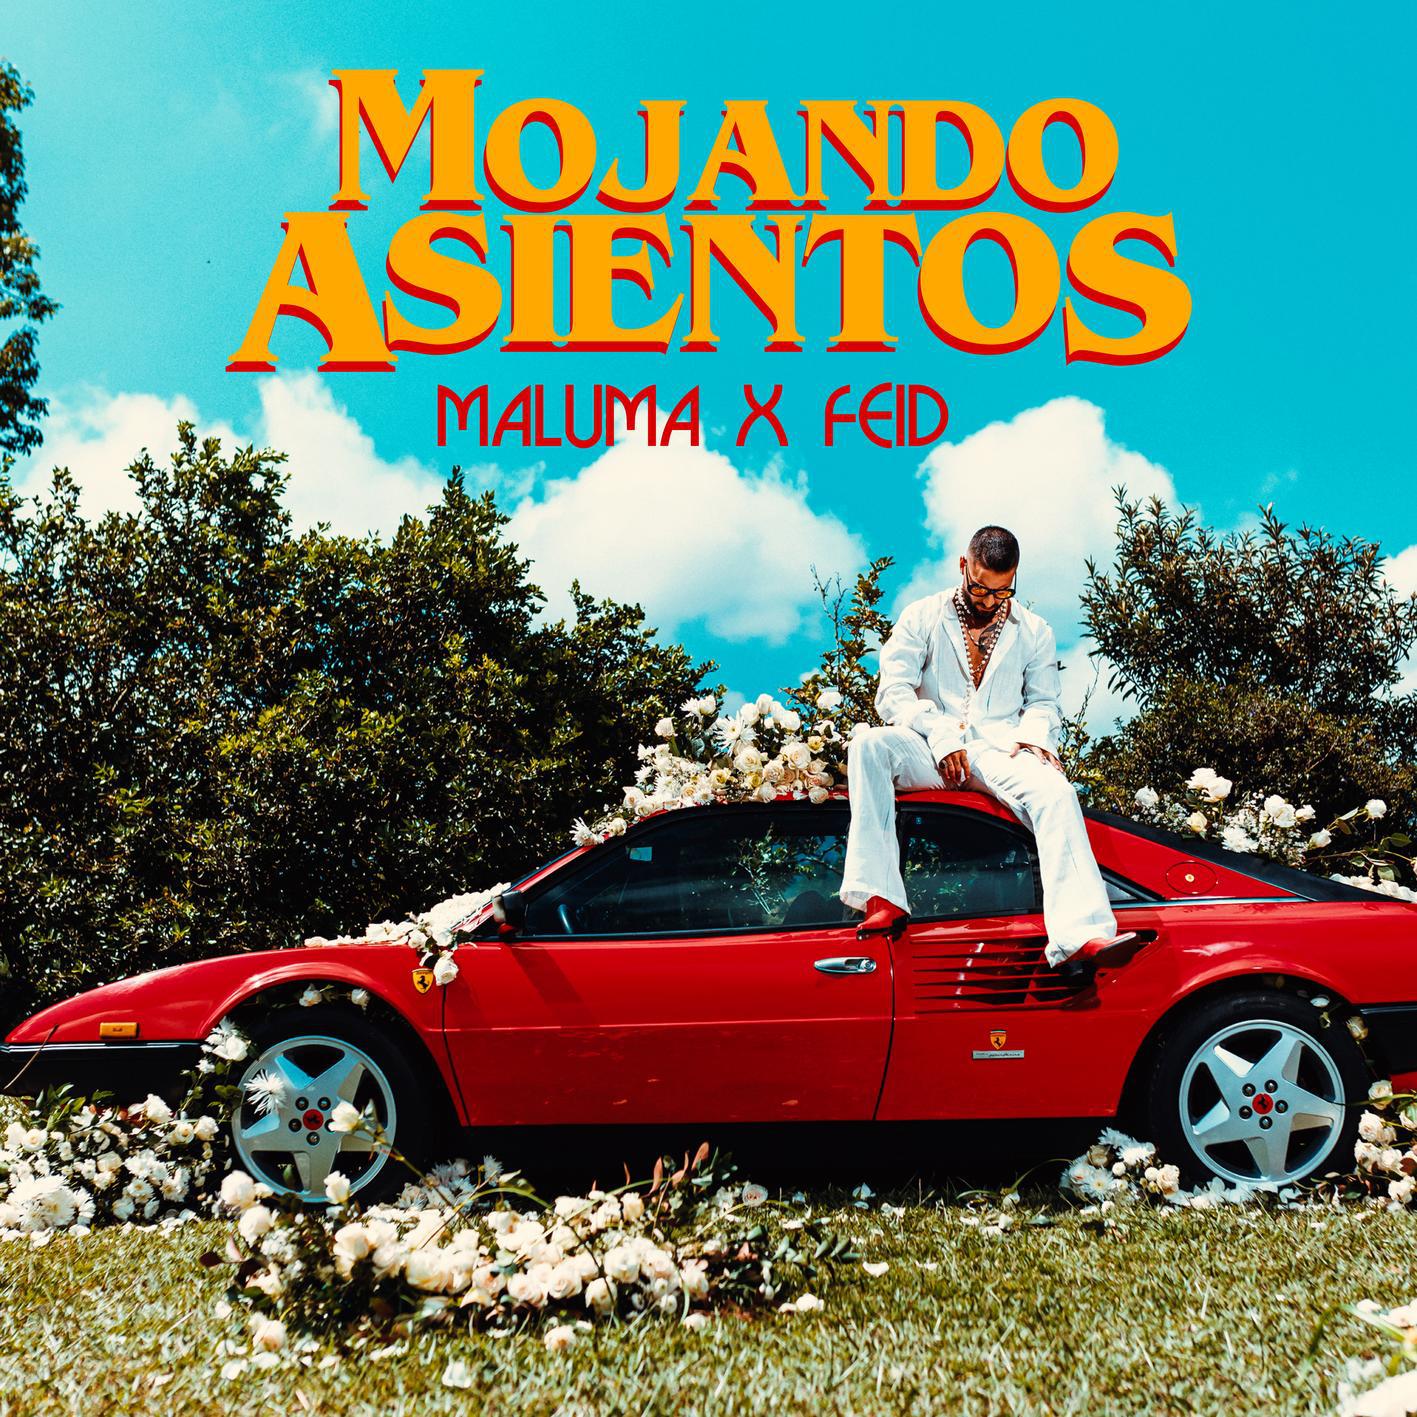 Mojando Asientos专辑